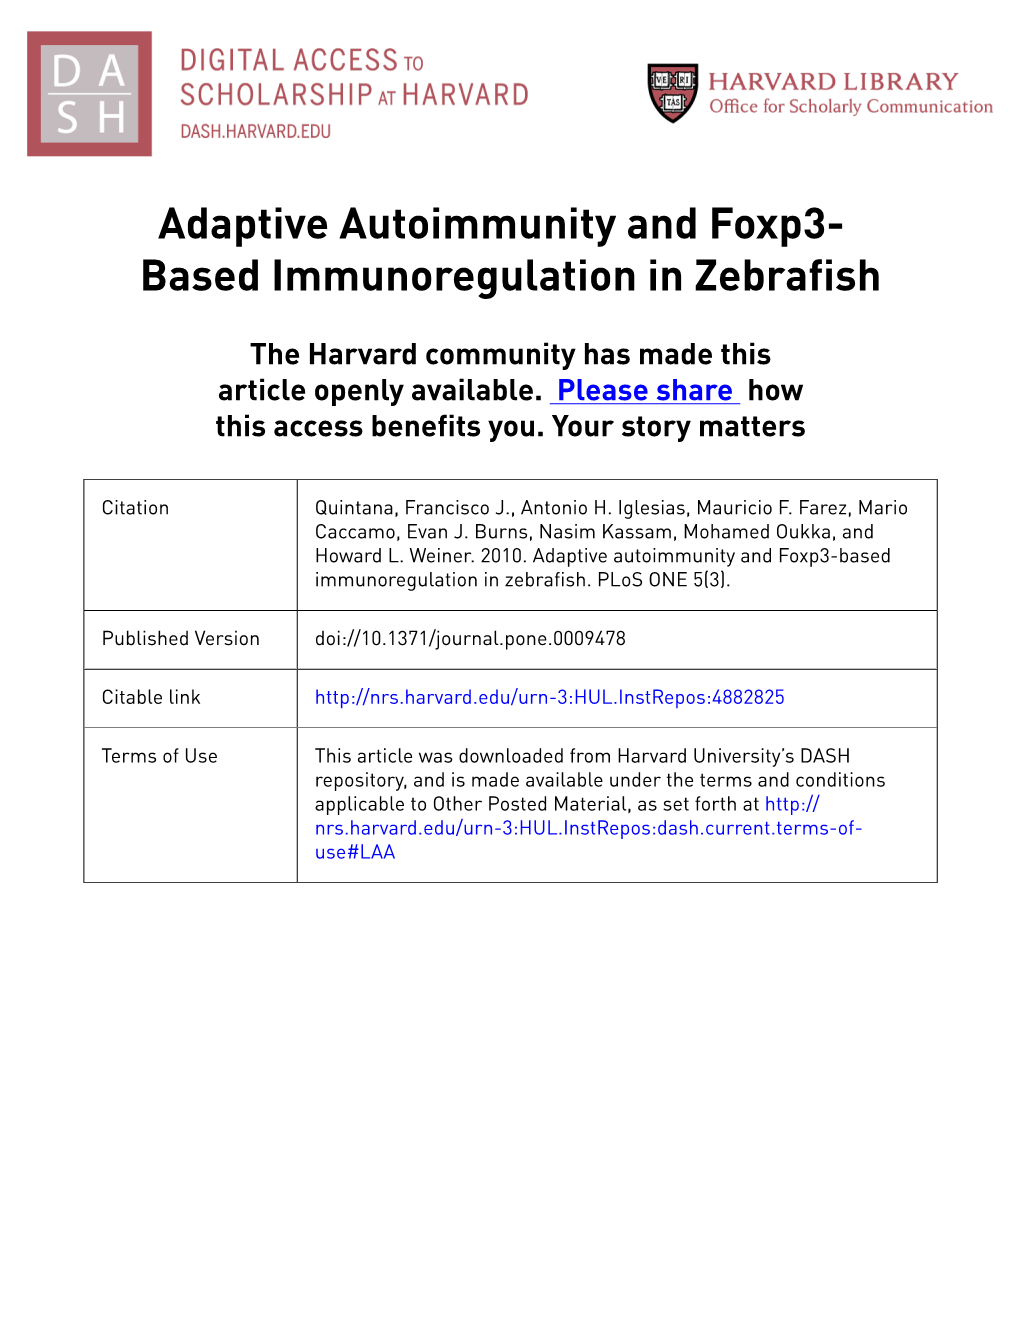 Adaptive Autoimmunity and Foxp3- Based Immunoregulation in Zebrafish